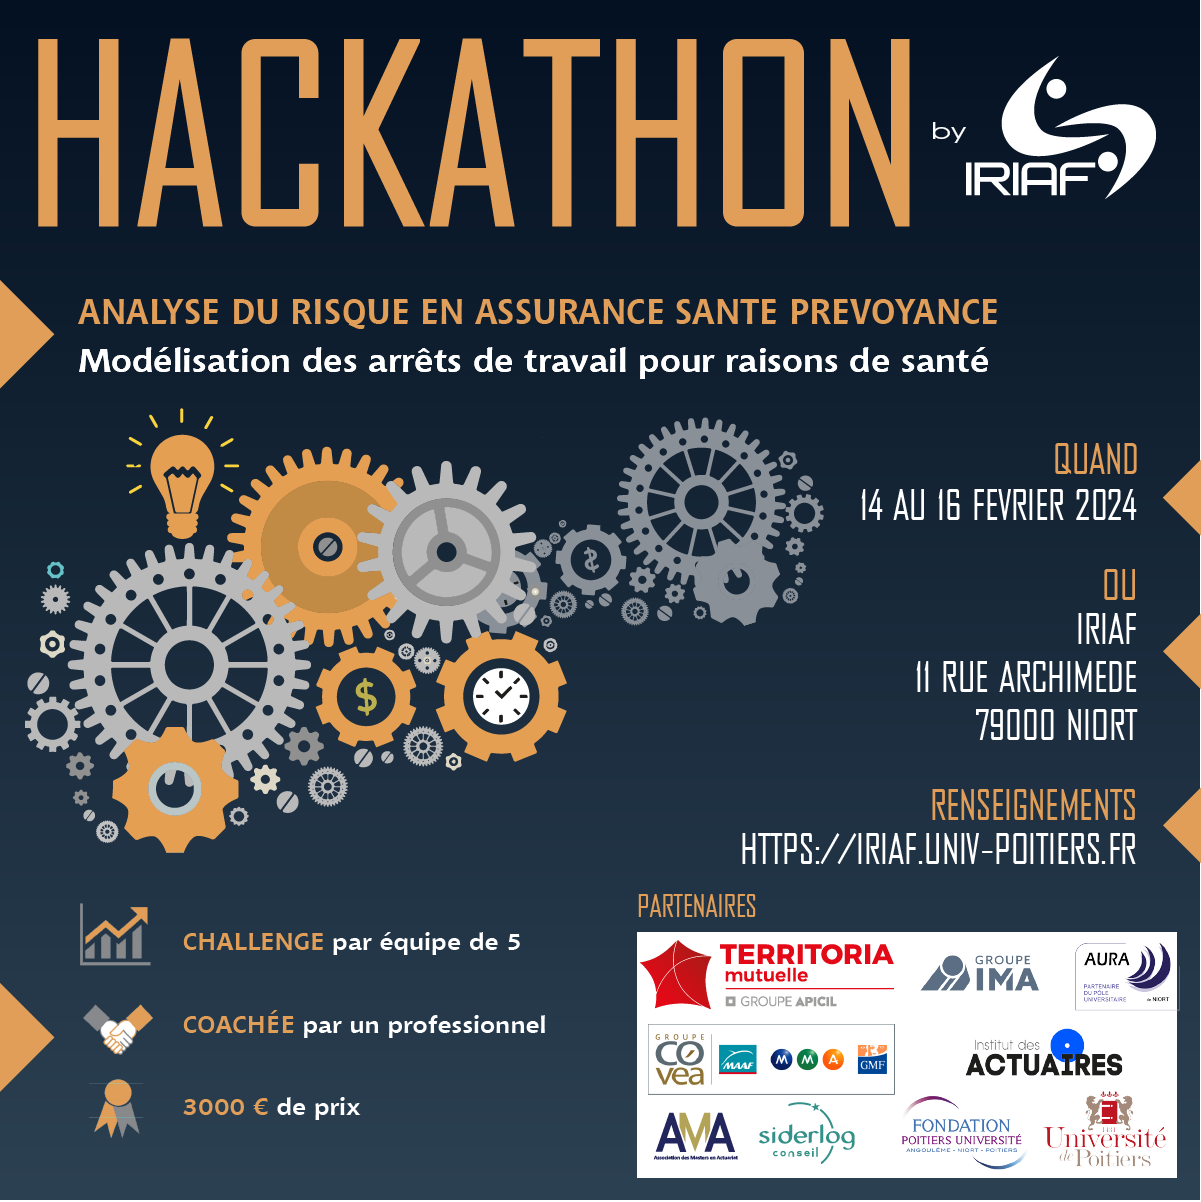 Hackathon by IRIAF !